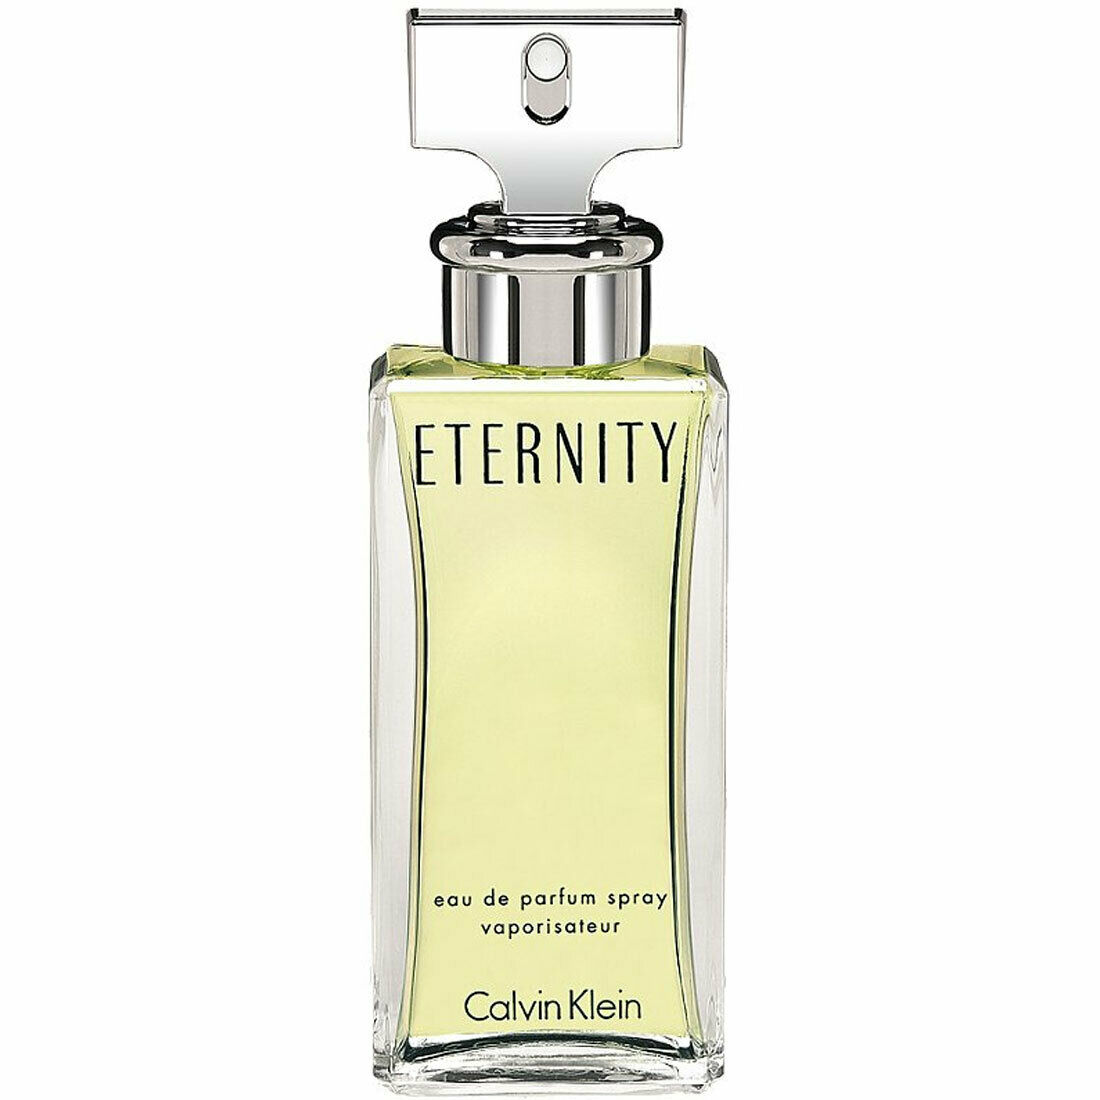 ETERNITY by Calvin Klein Perfume for Women Eau De Parfum 3.4 oz NEW CK ...